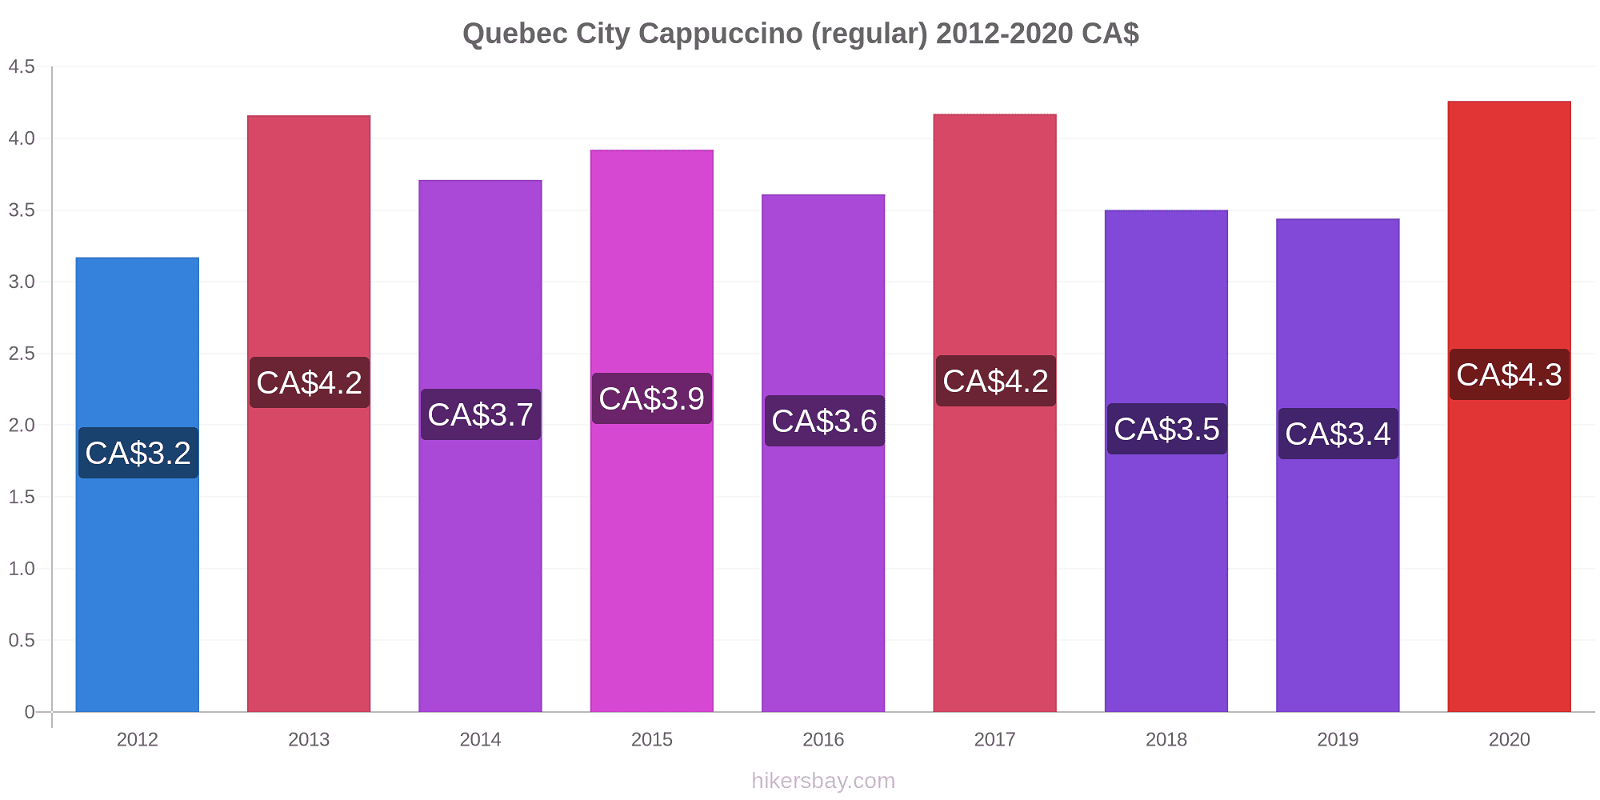 Quebec City price changes Cappuccino (regular) hikersbay.com